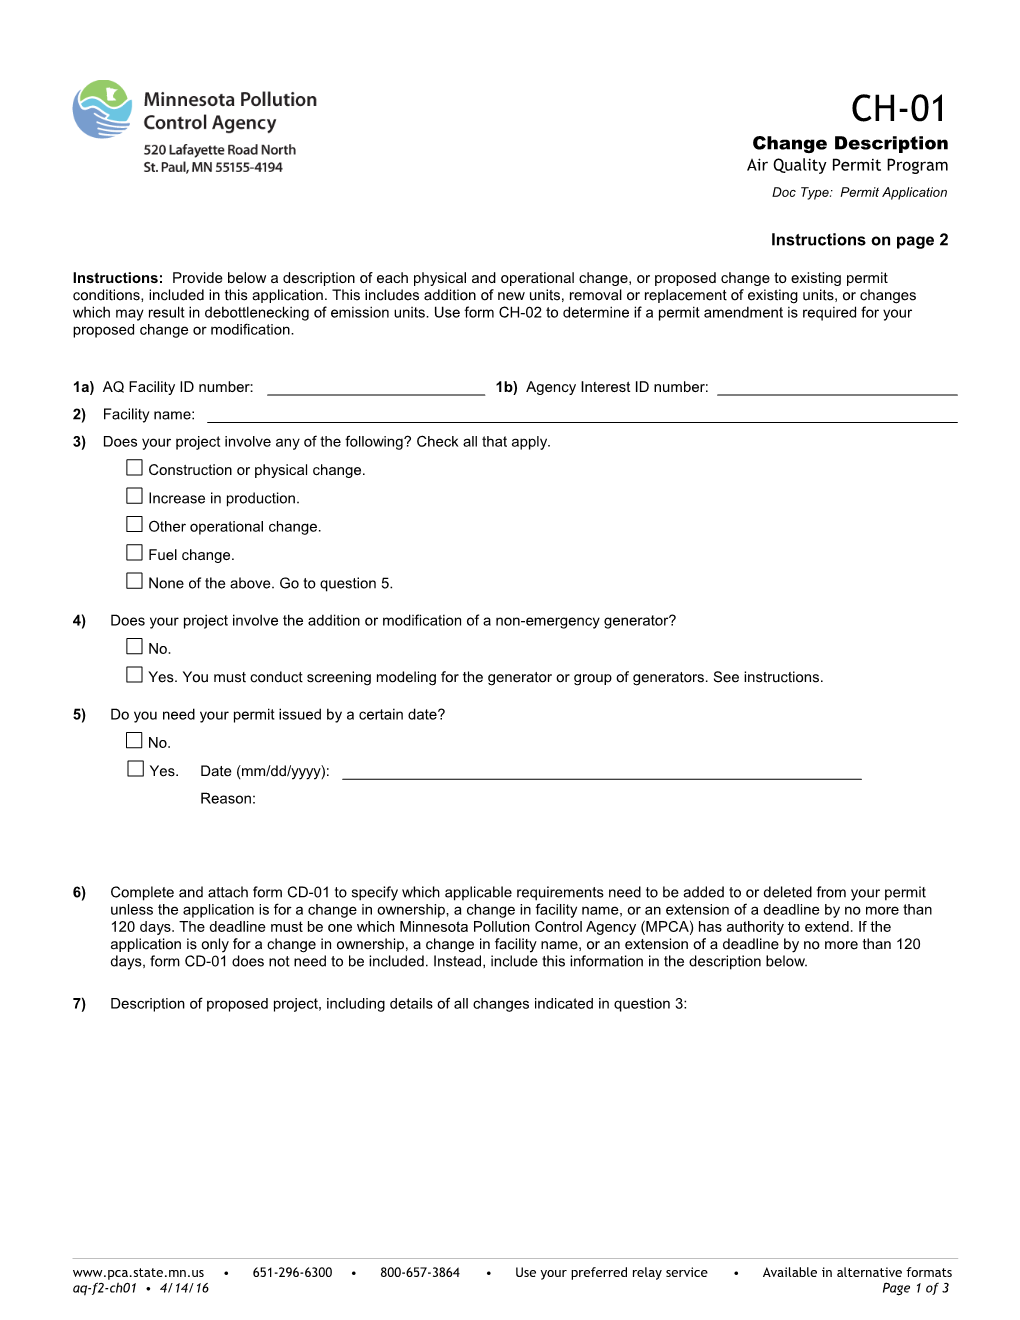 CH-01 Change Description - Air Quality Permit Program - Form